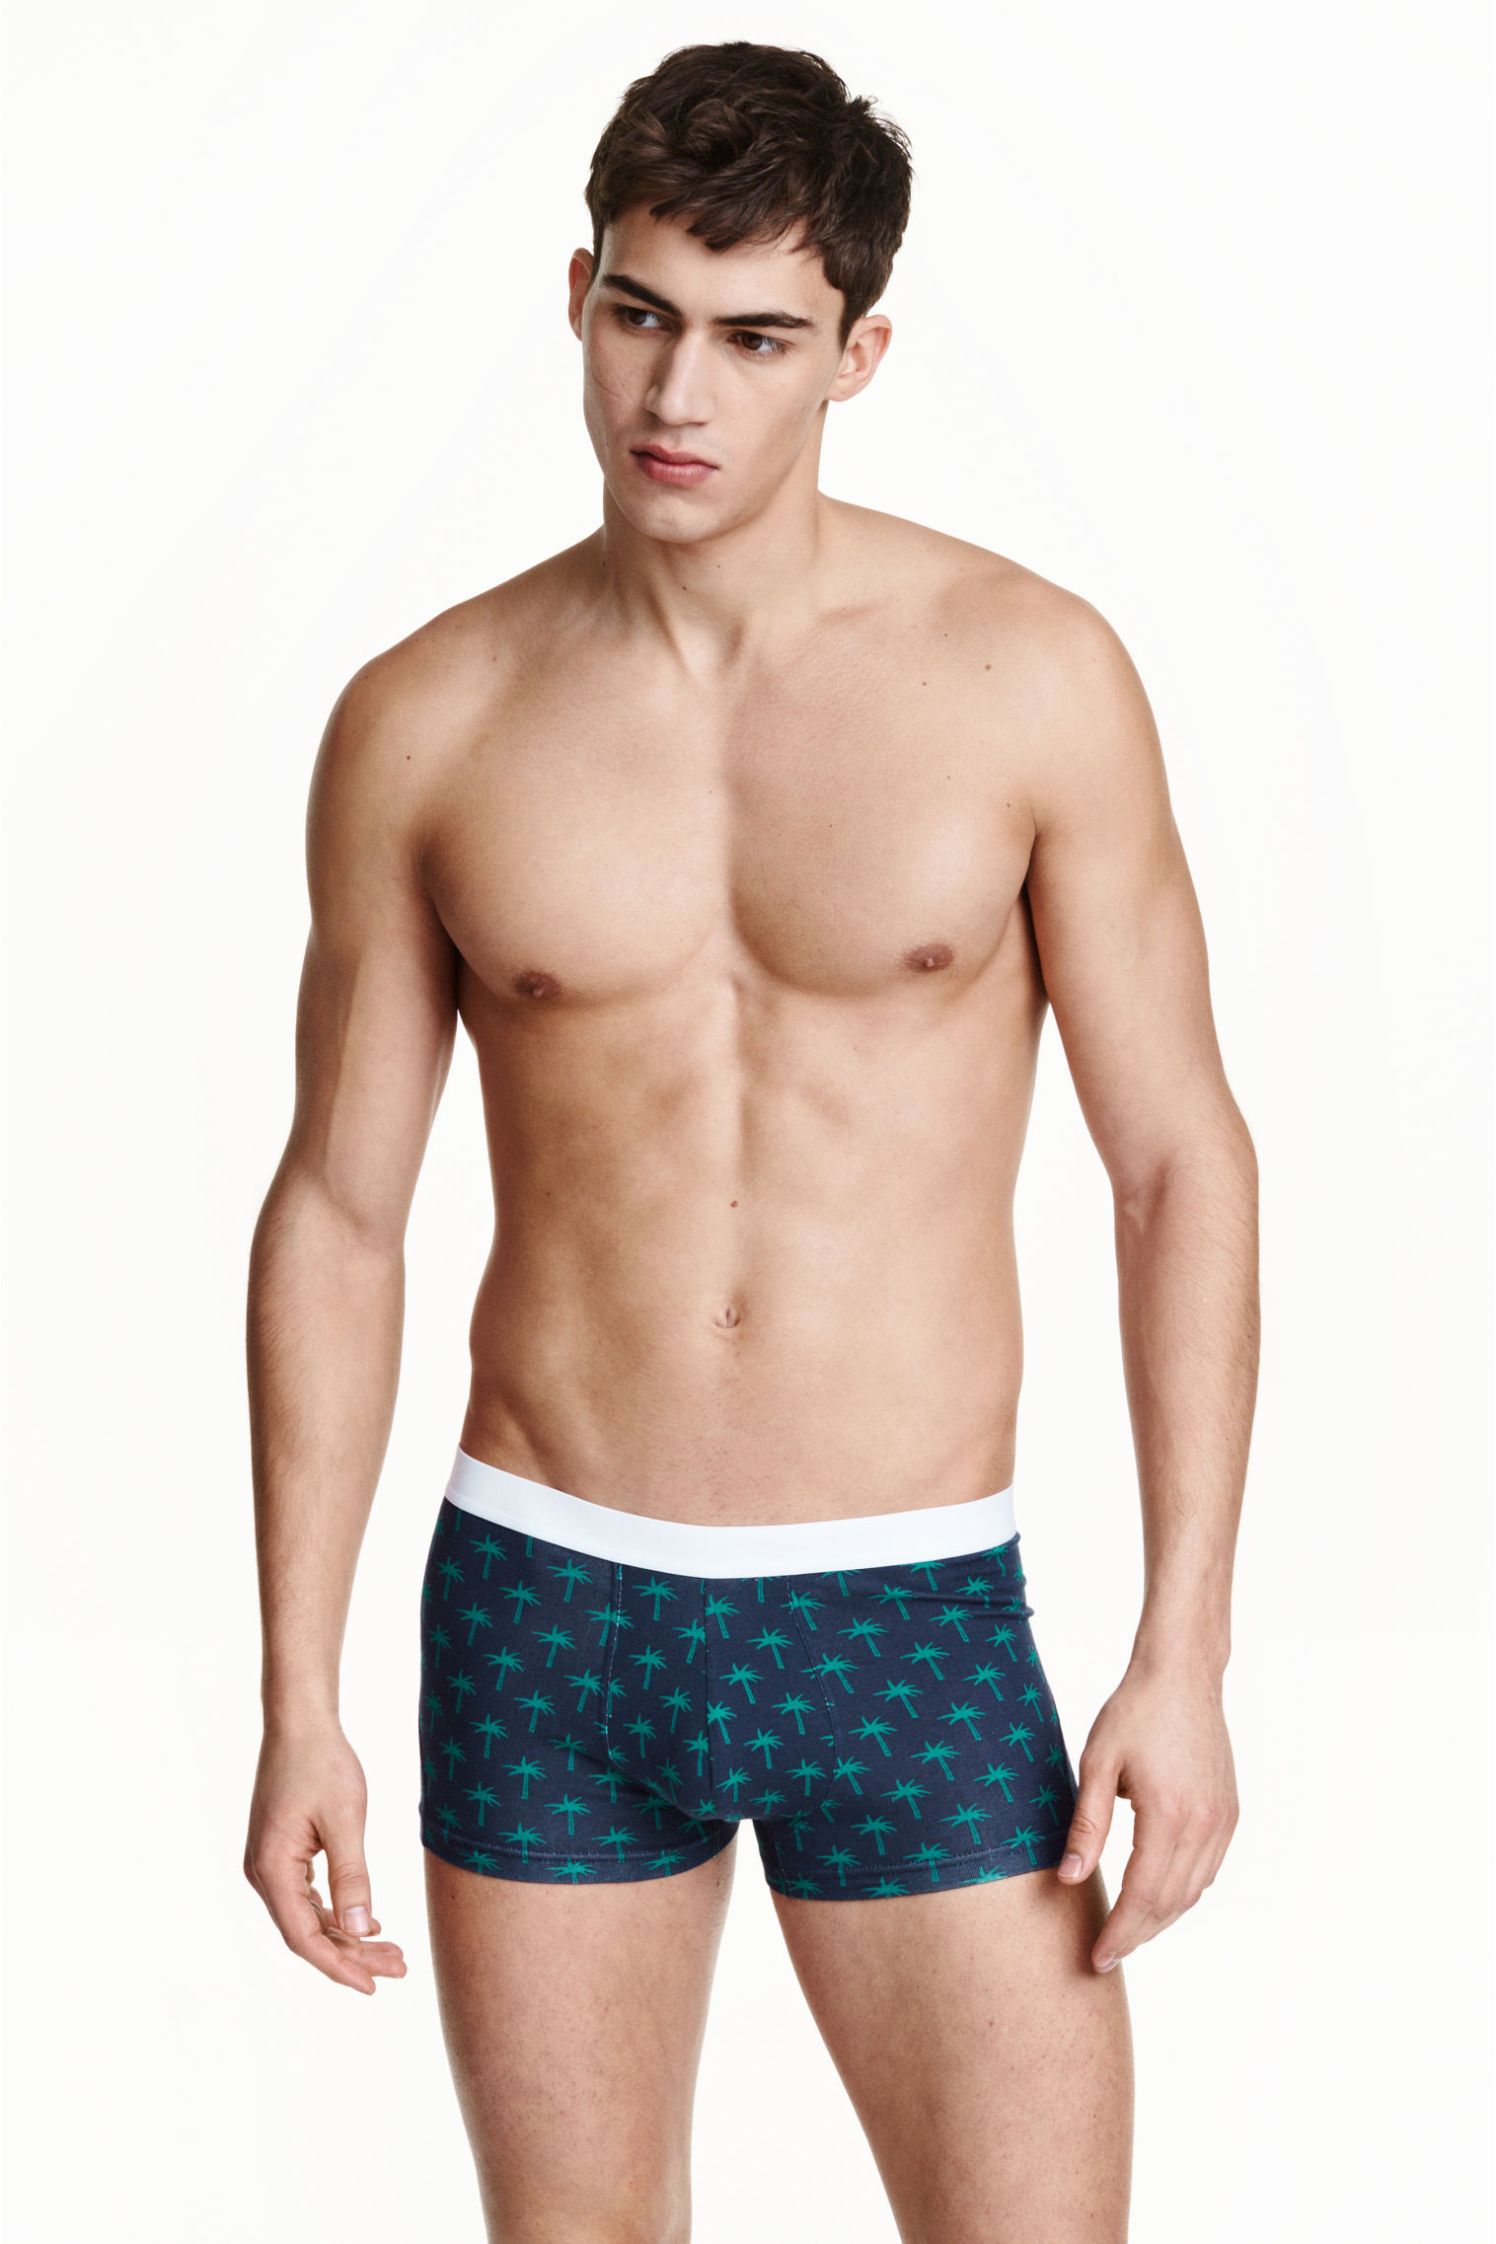 H&M Underwear - Spring/Summer 2015